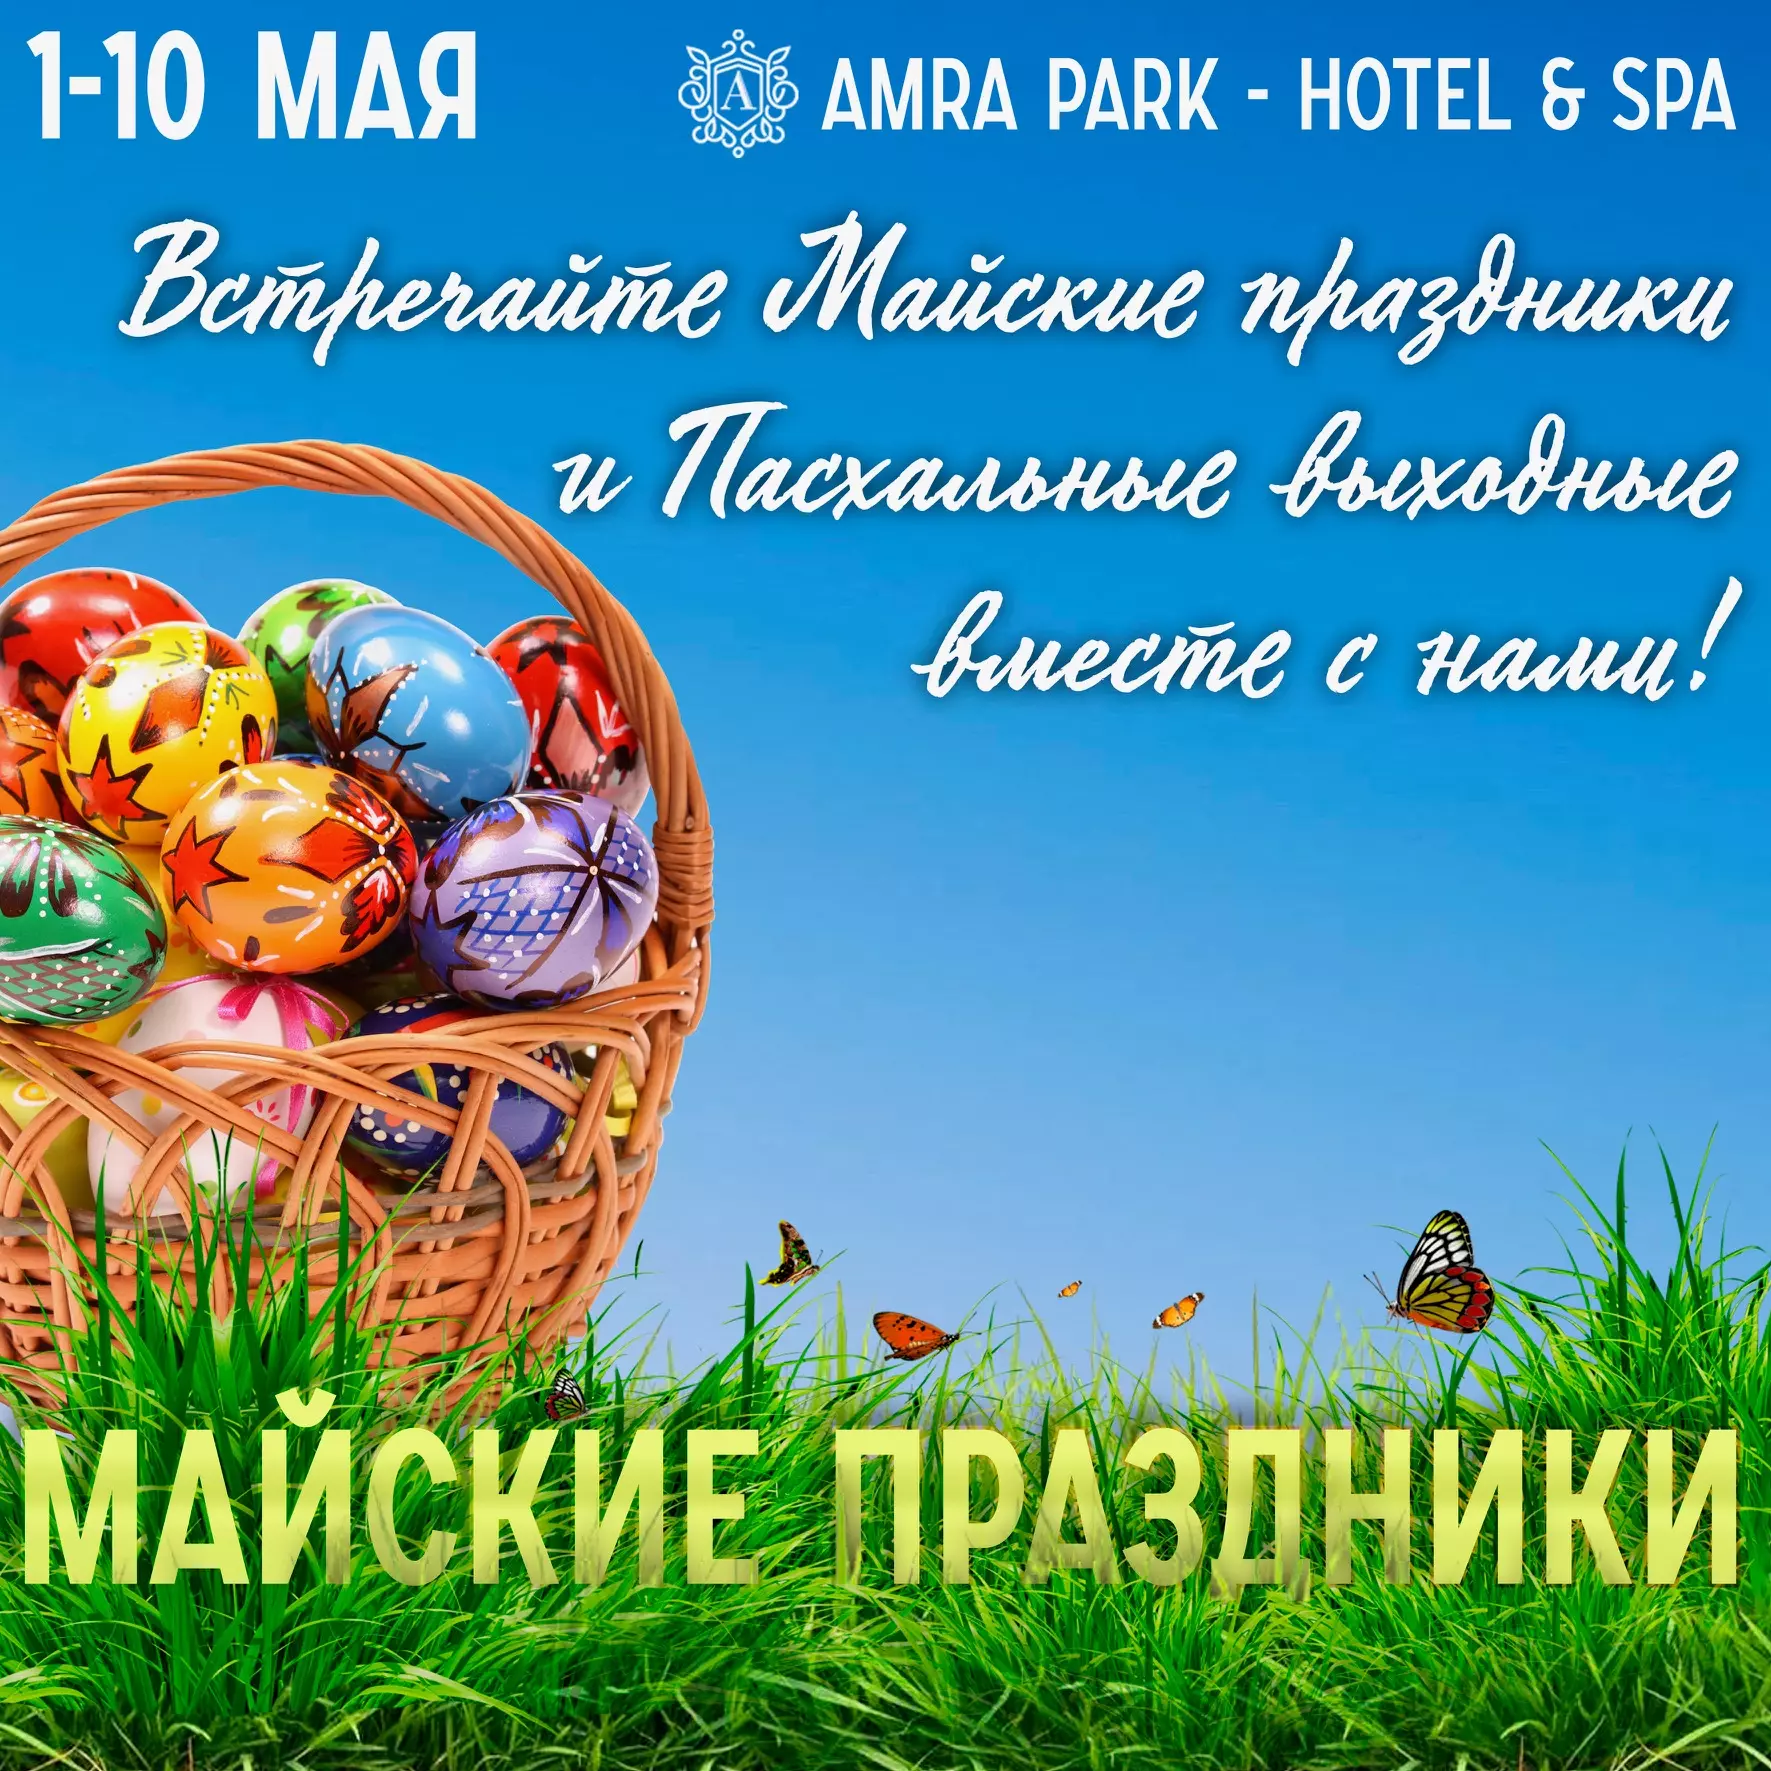 Встречаем майские праздники в Amra Park & Spa вместе!